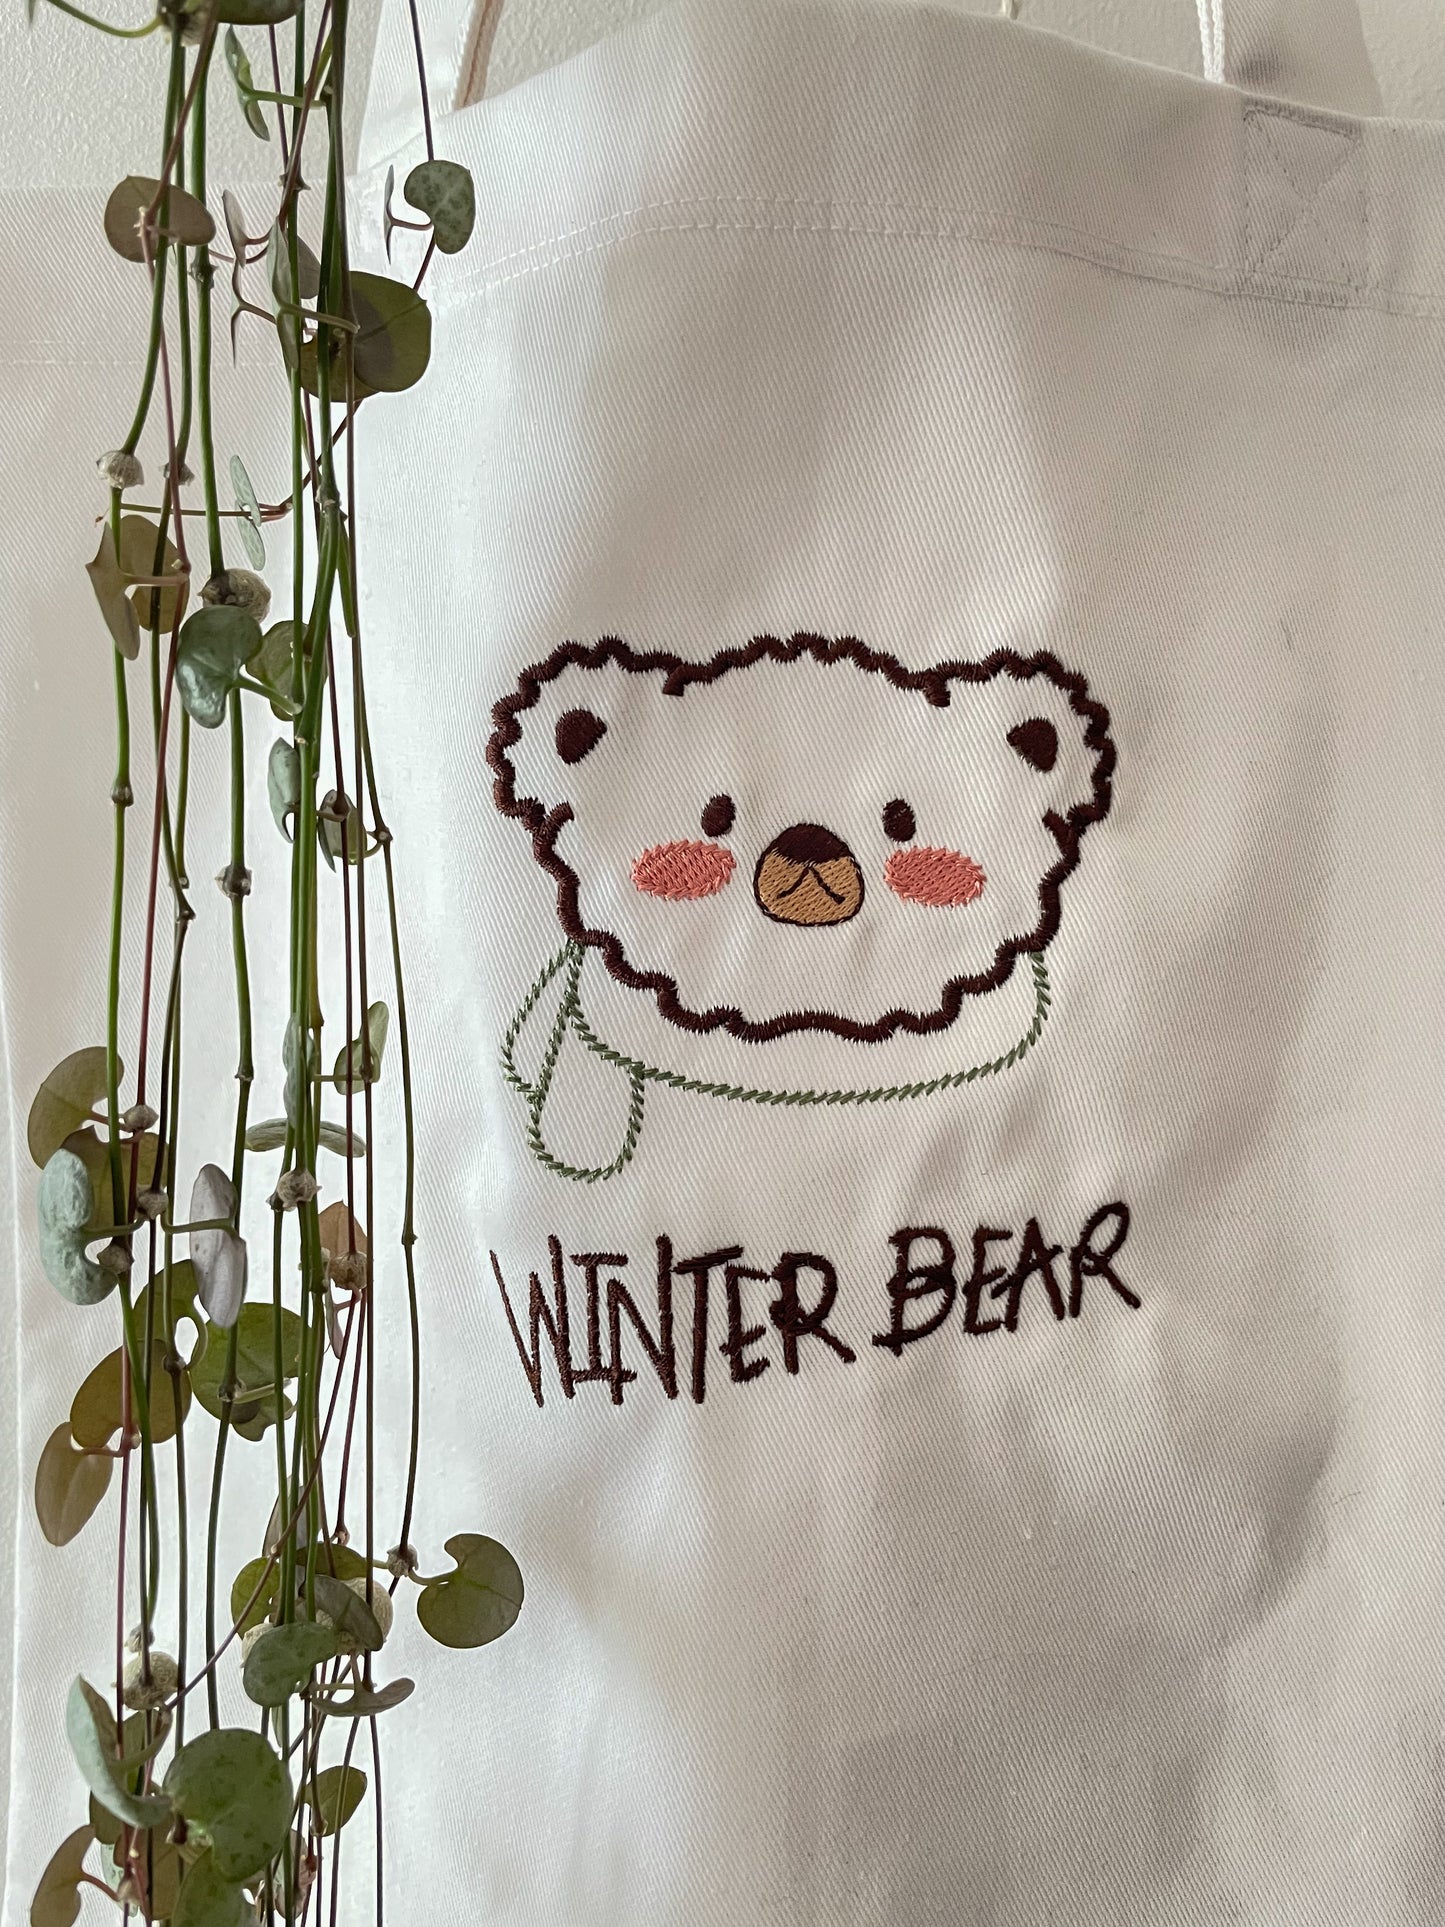 Winter Bear Tote Bag